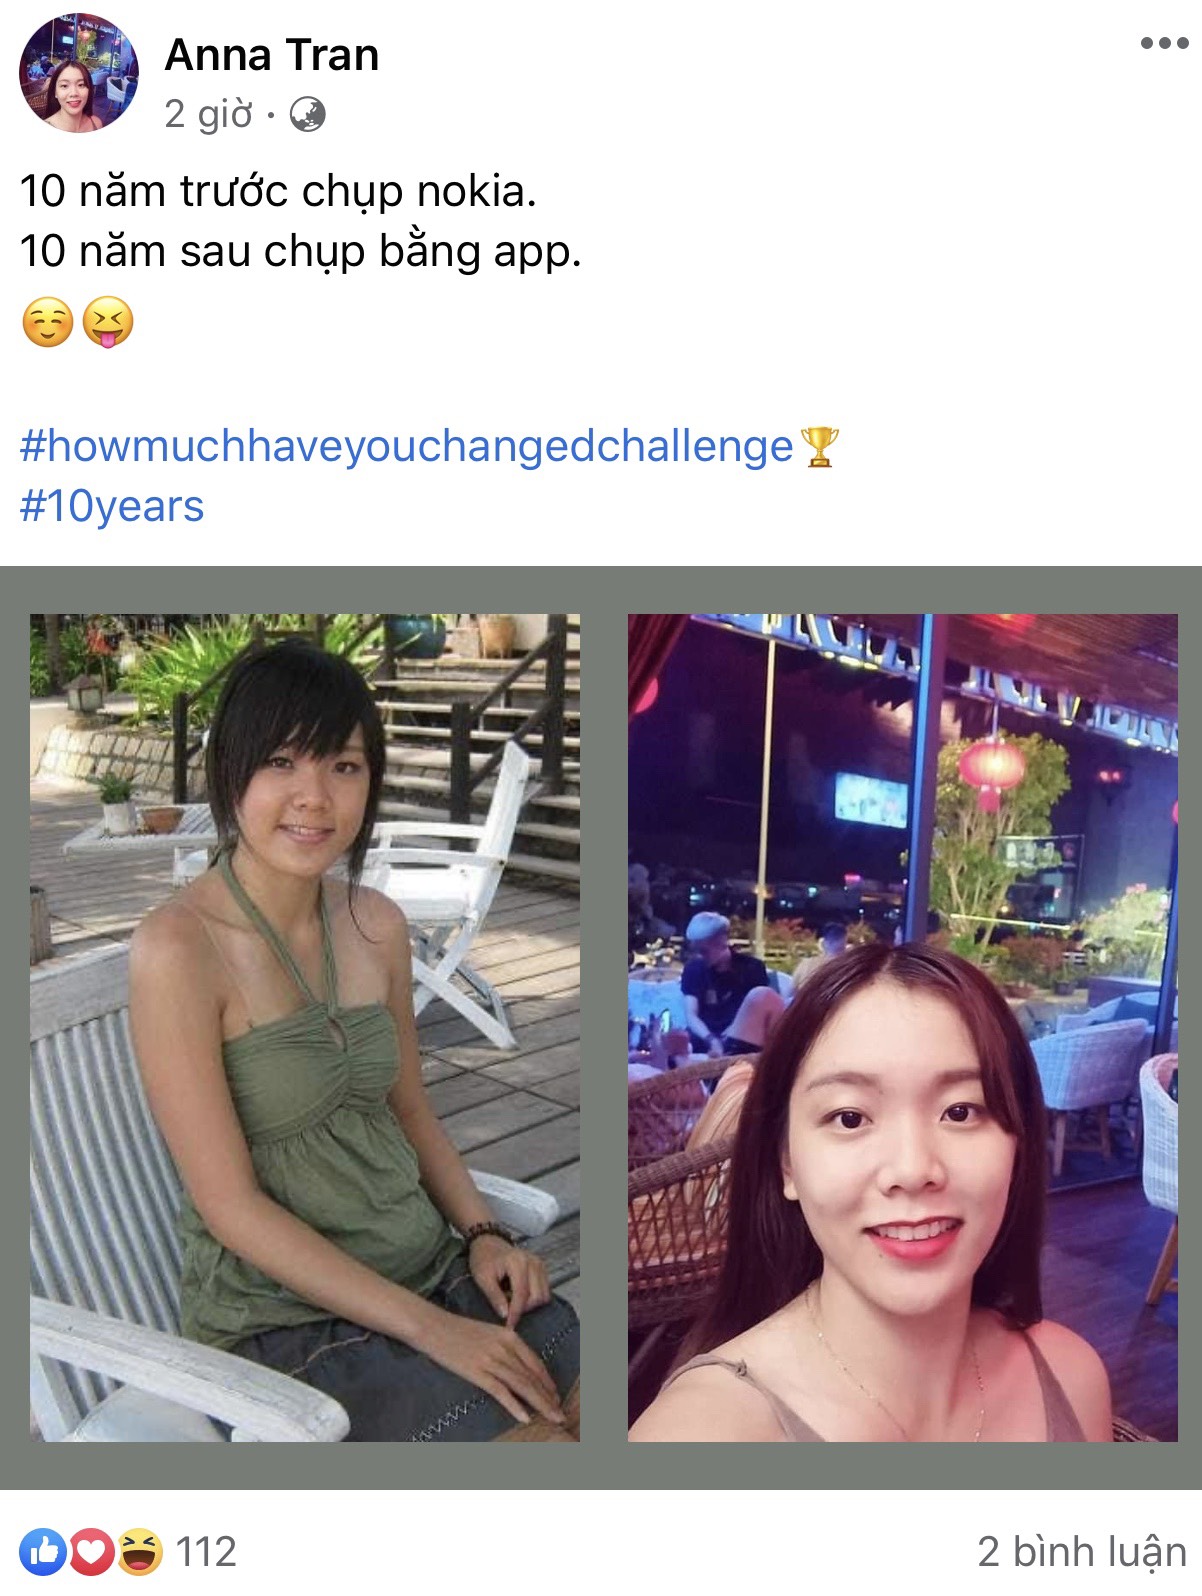 Facebook xuất hiện trào lưu tương tự với hashtag #howmuchhaveyouchangechallenge được cư dân mạng chia sẻ rầm rộ và hào hứng tham gia.